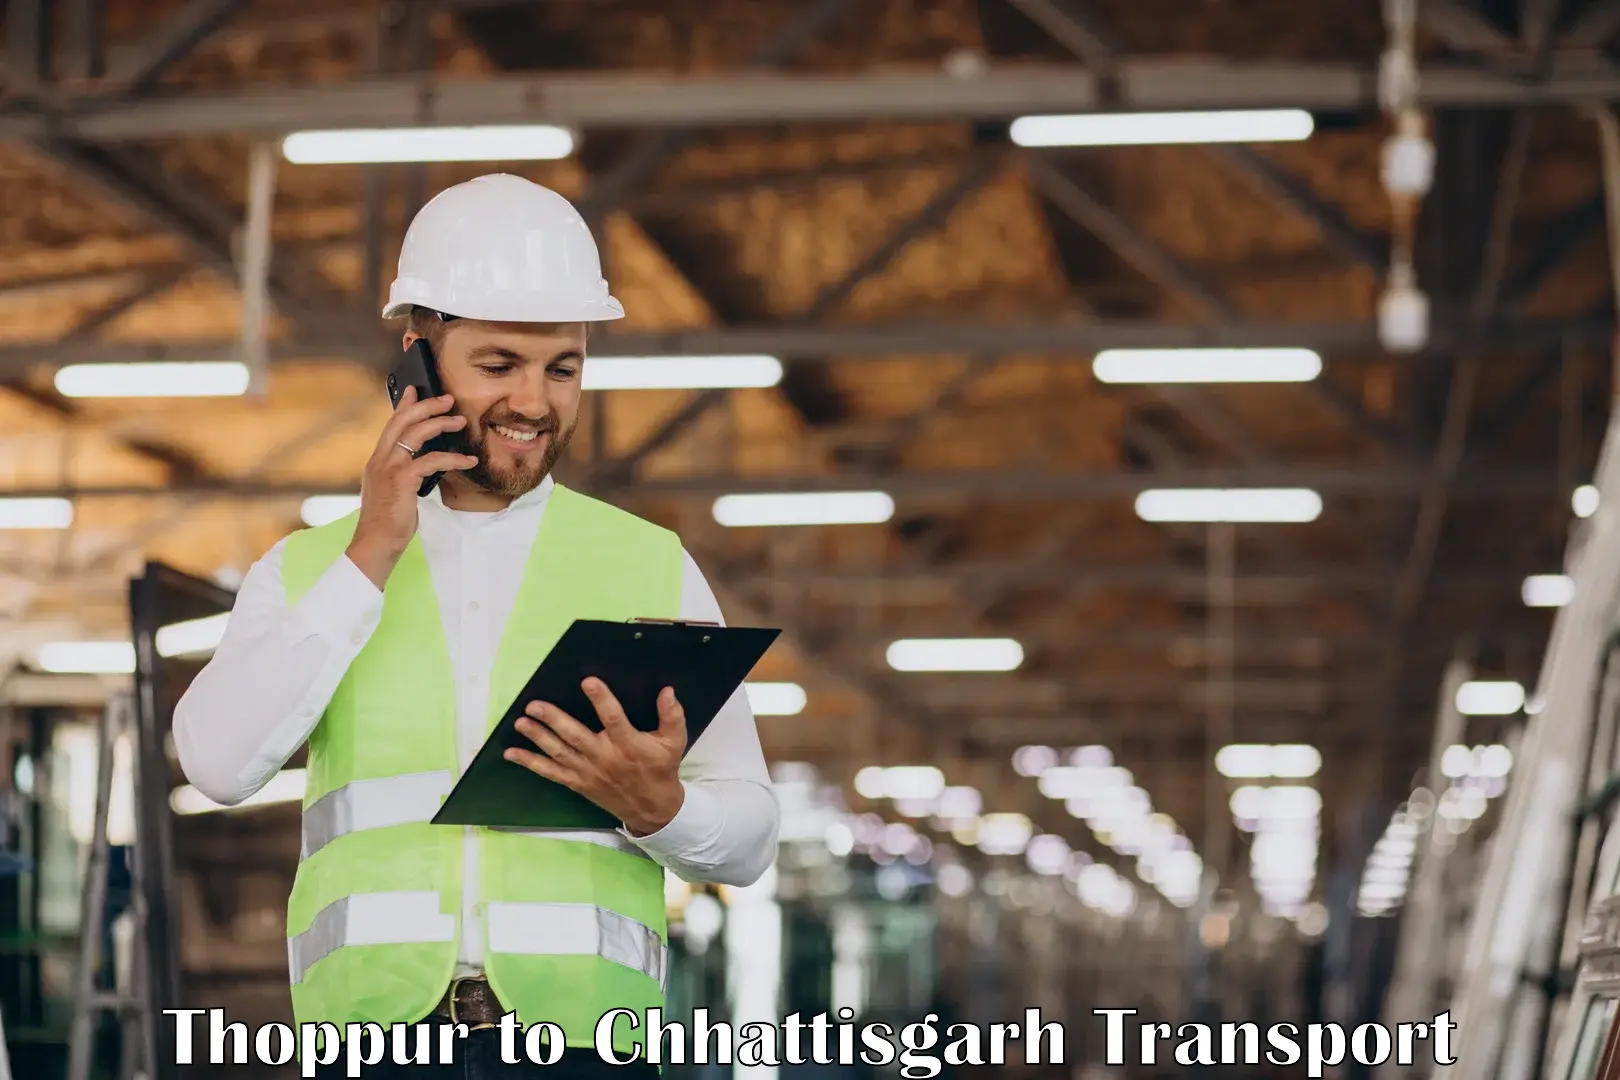 India truck logistics services Thoppur to Patna Chhattisgarh